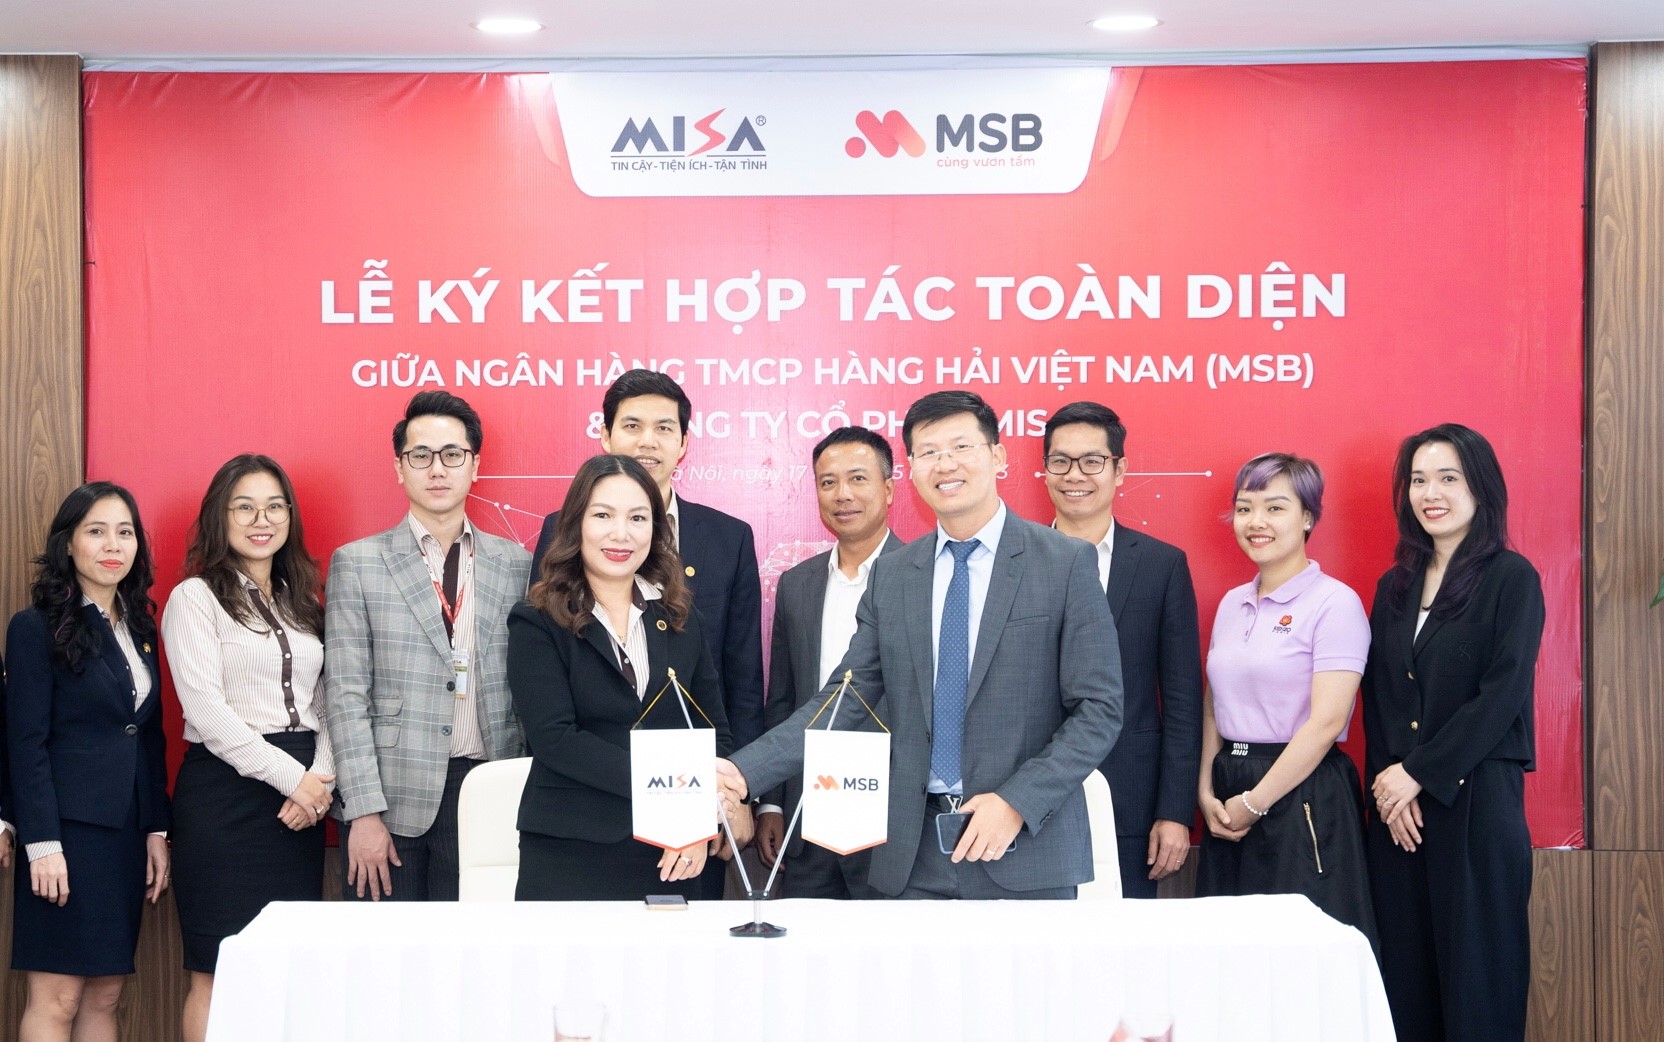 MSB ký kết hợp tác toàn diện cùng MISA triển khai giải pháp tài chính số cho doanh nghiệp - Ảnh 1.